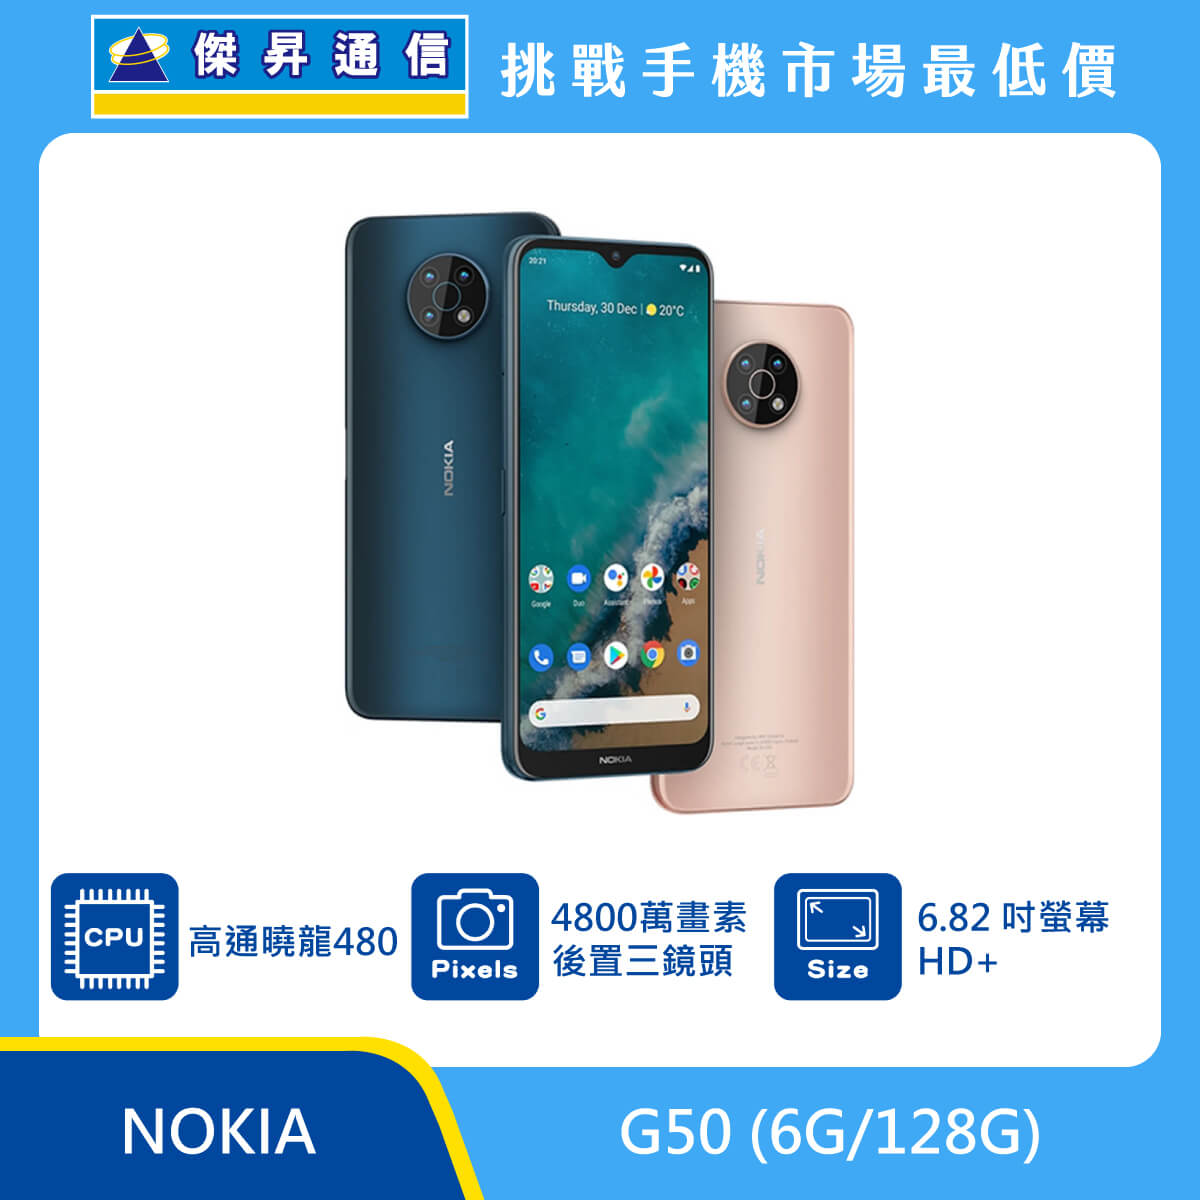 NOKIA G50 (6G/128G)